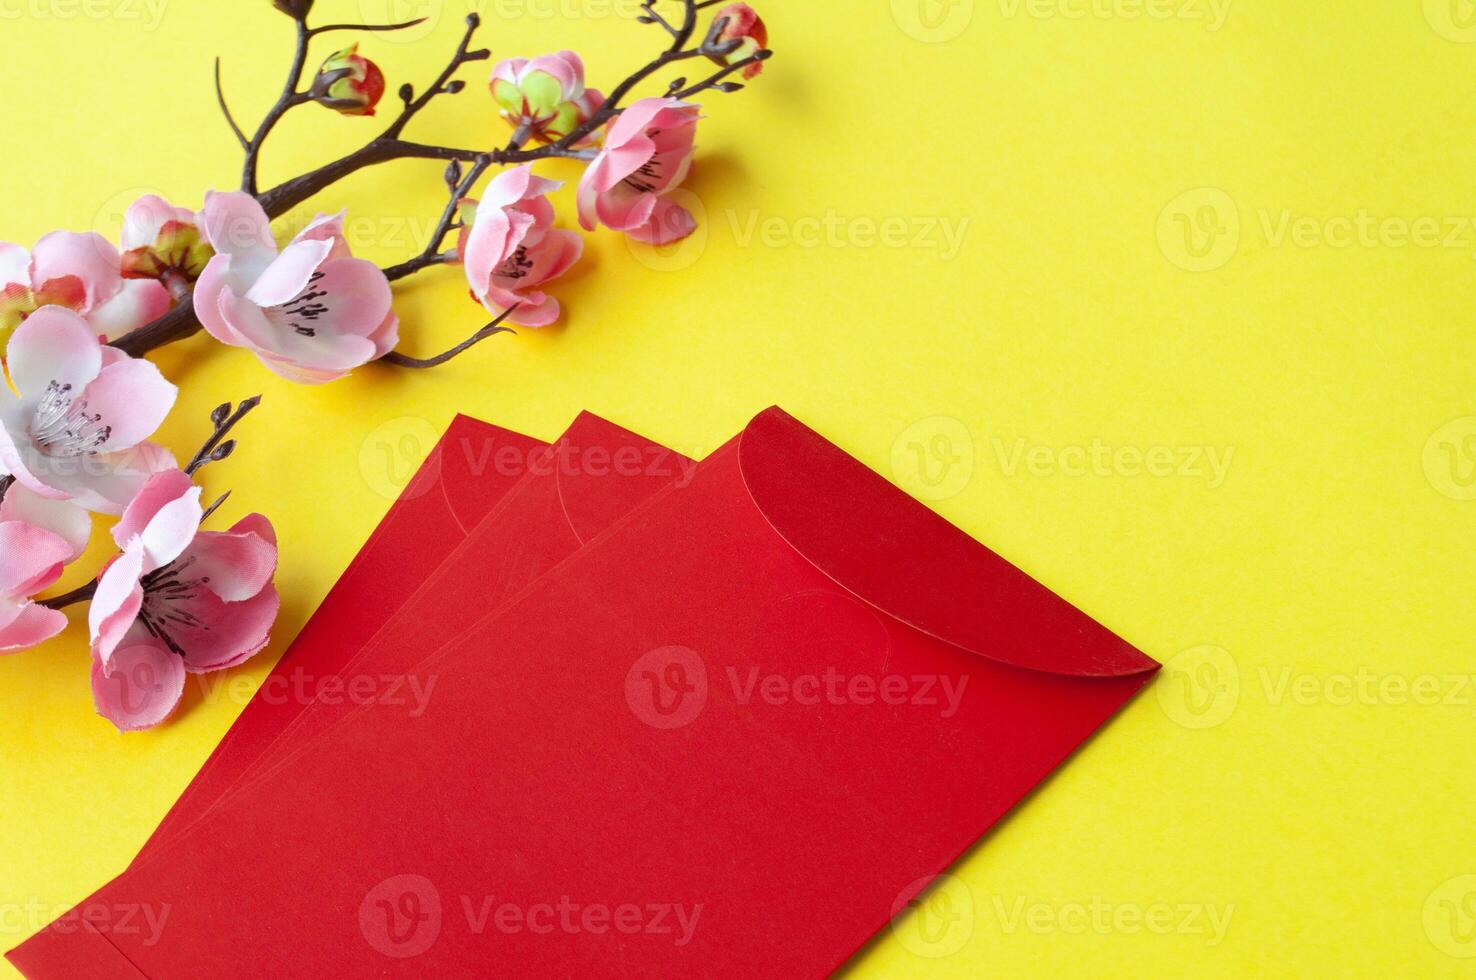 chino nuevo año rojo paquete con personalizable espacio para texto o deseos. chino nuevo año celebracion concepto foto